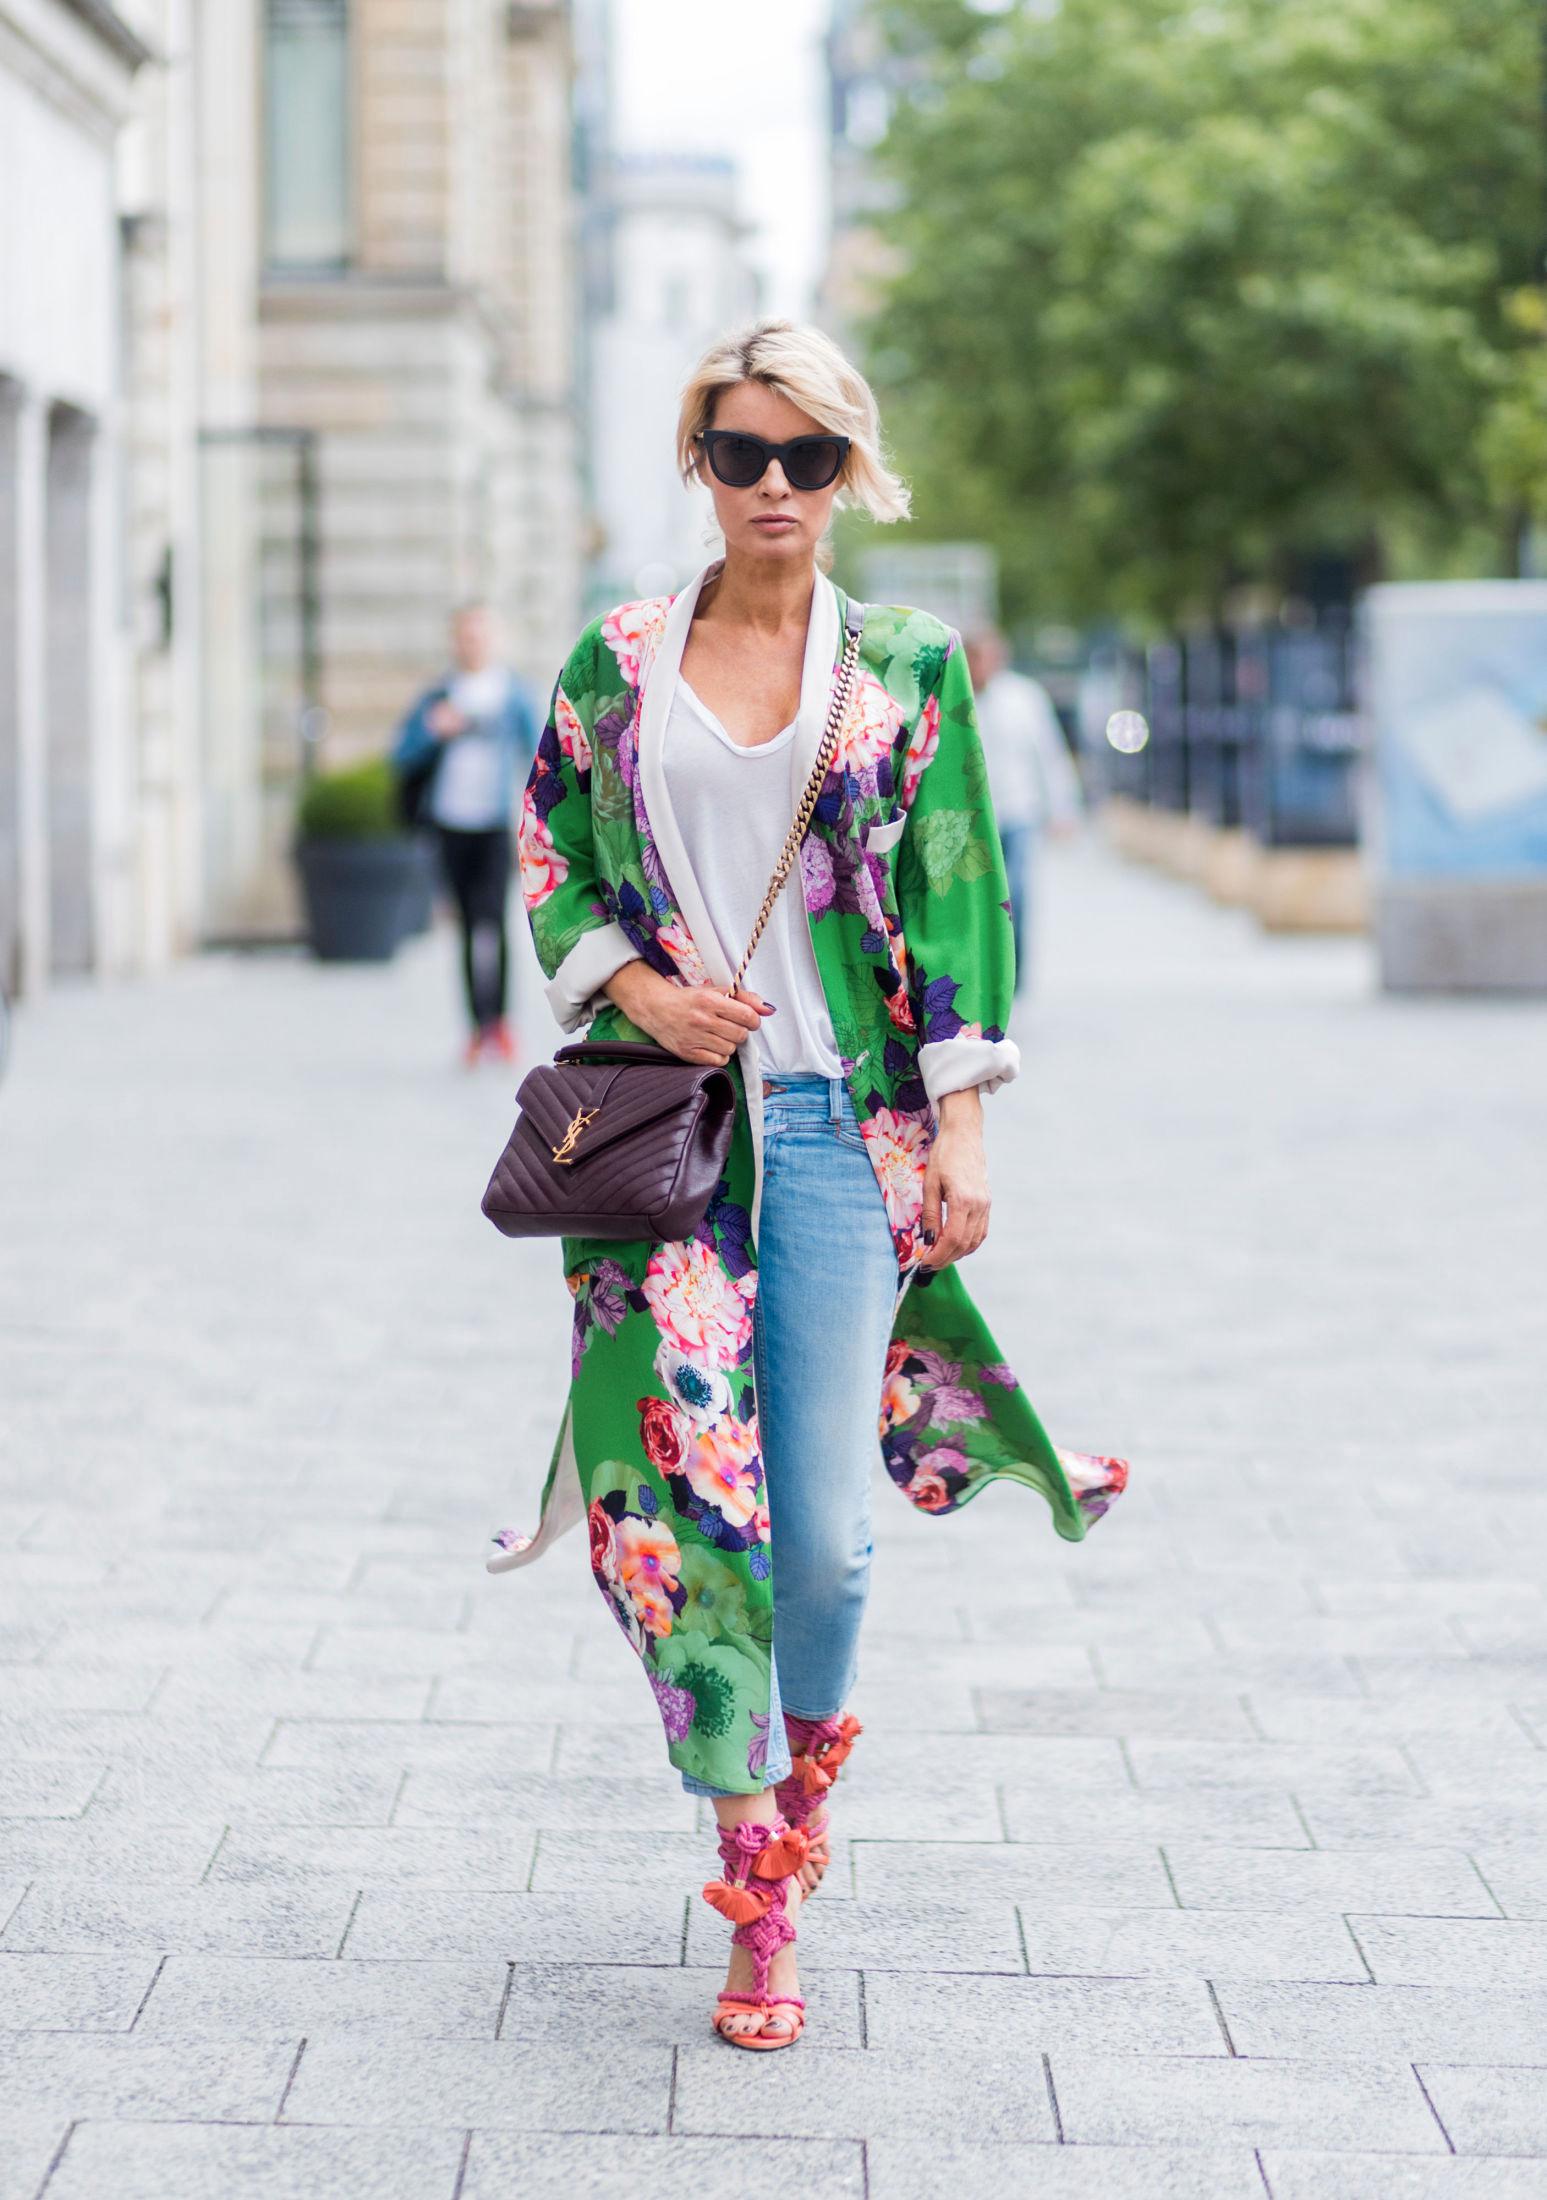 TIL JEANS: Modell og moteblogger Gitta Banko har på seg en grønn kimono fra Zara over en hvit t-skjorte fra James Perse og jeans fra Rag & Bone. Foto: Getty Images.